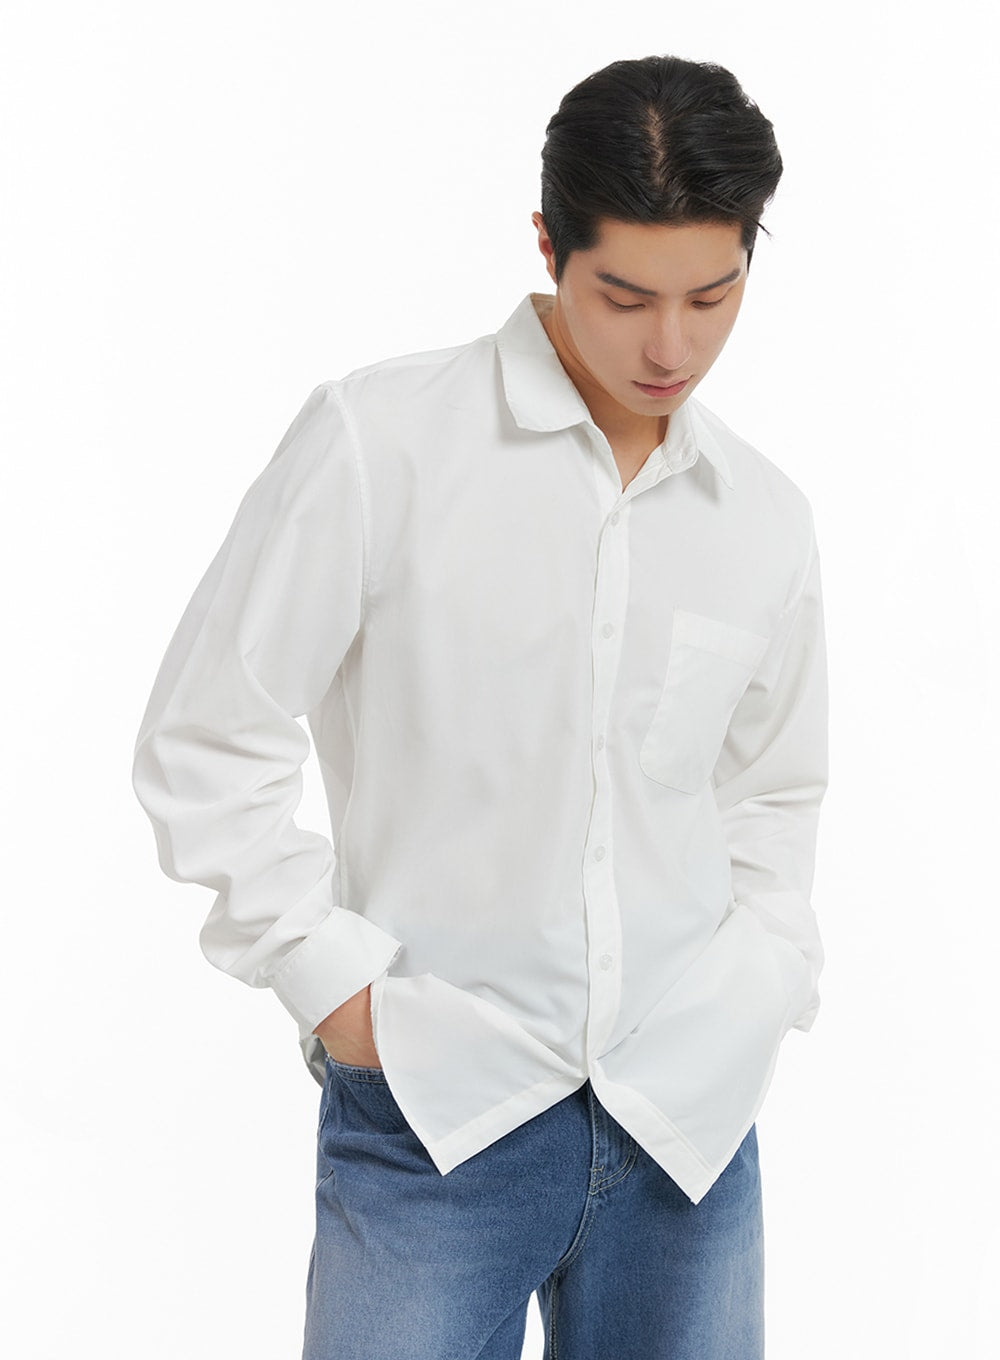 mens-classic-white-shirt-ia401 / White